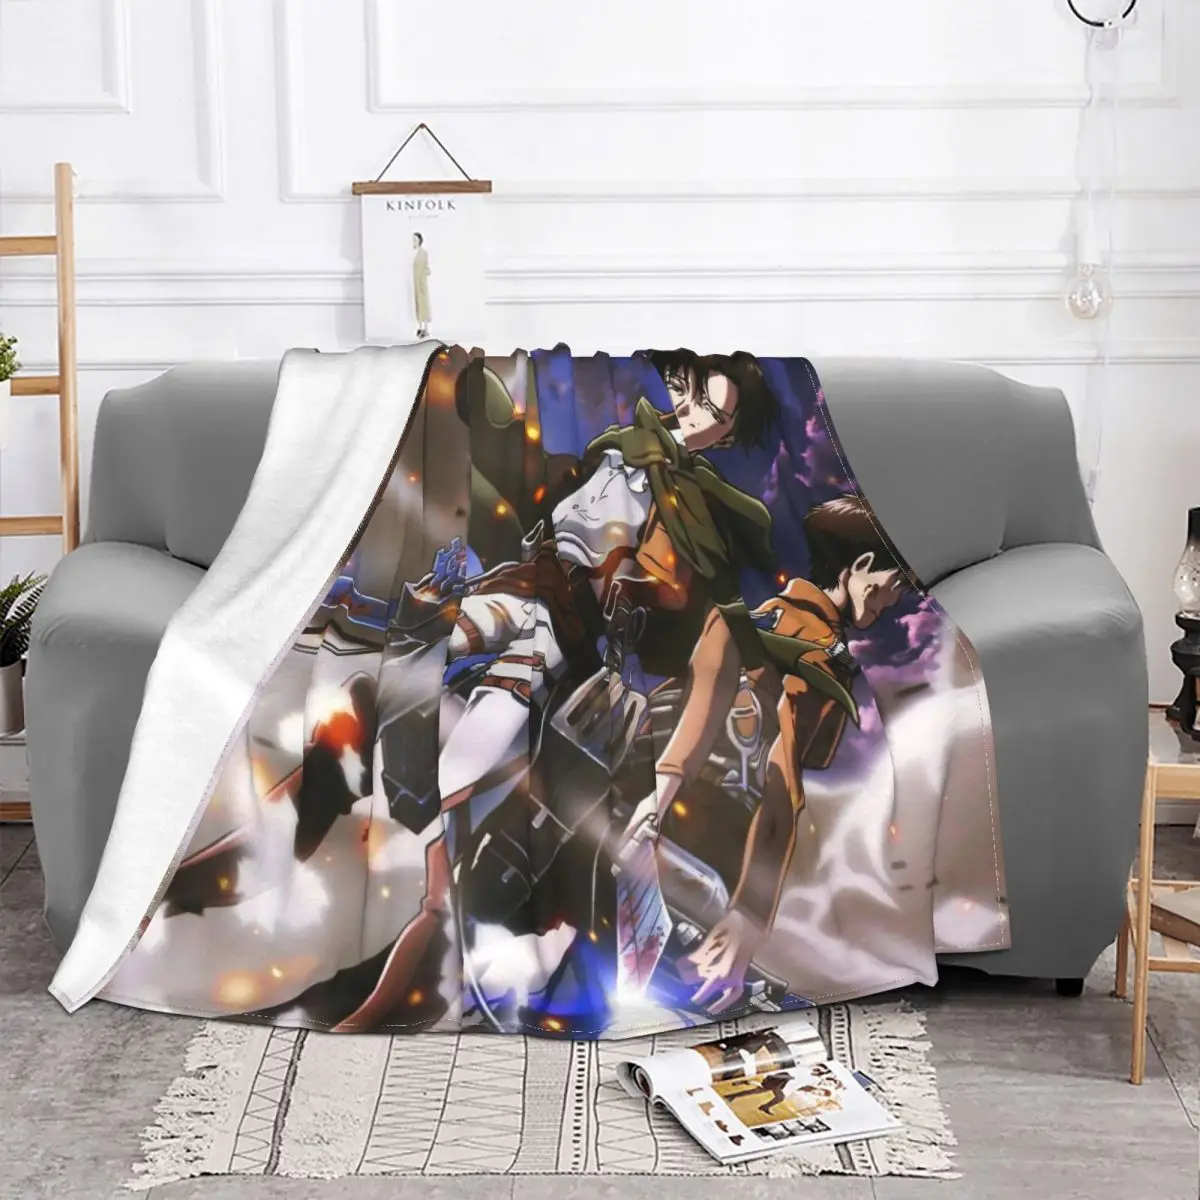 

Manta de Anime de Attack On Titan AOT, forro polar, suave, Unisex, para sofá, colcha al aire libre